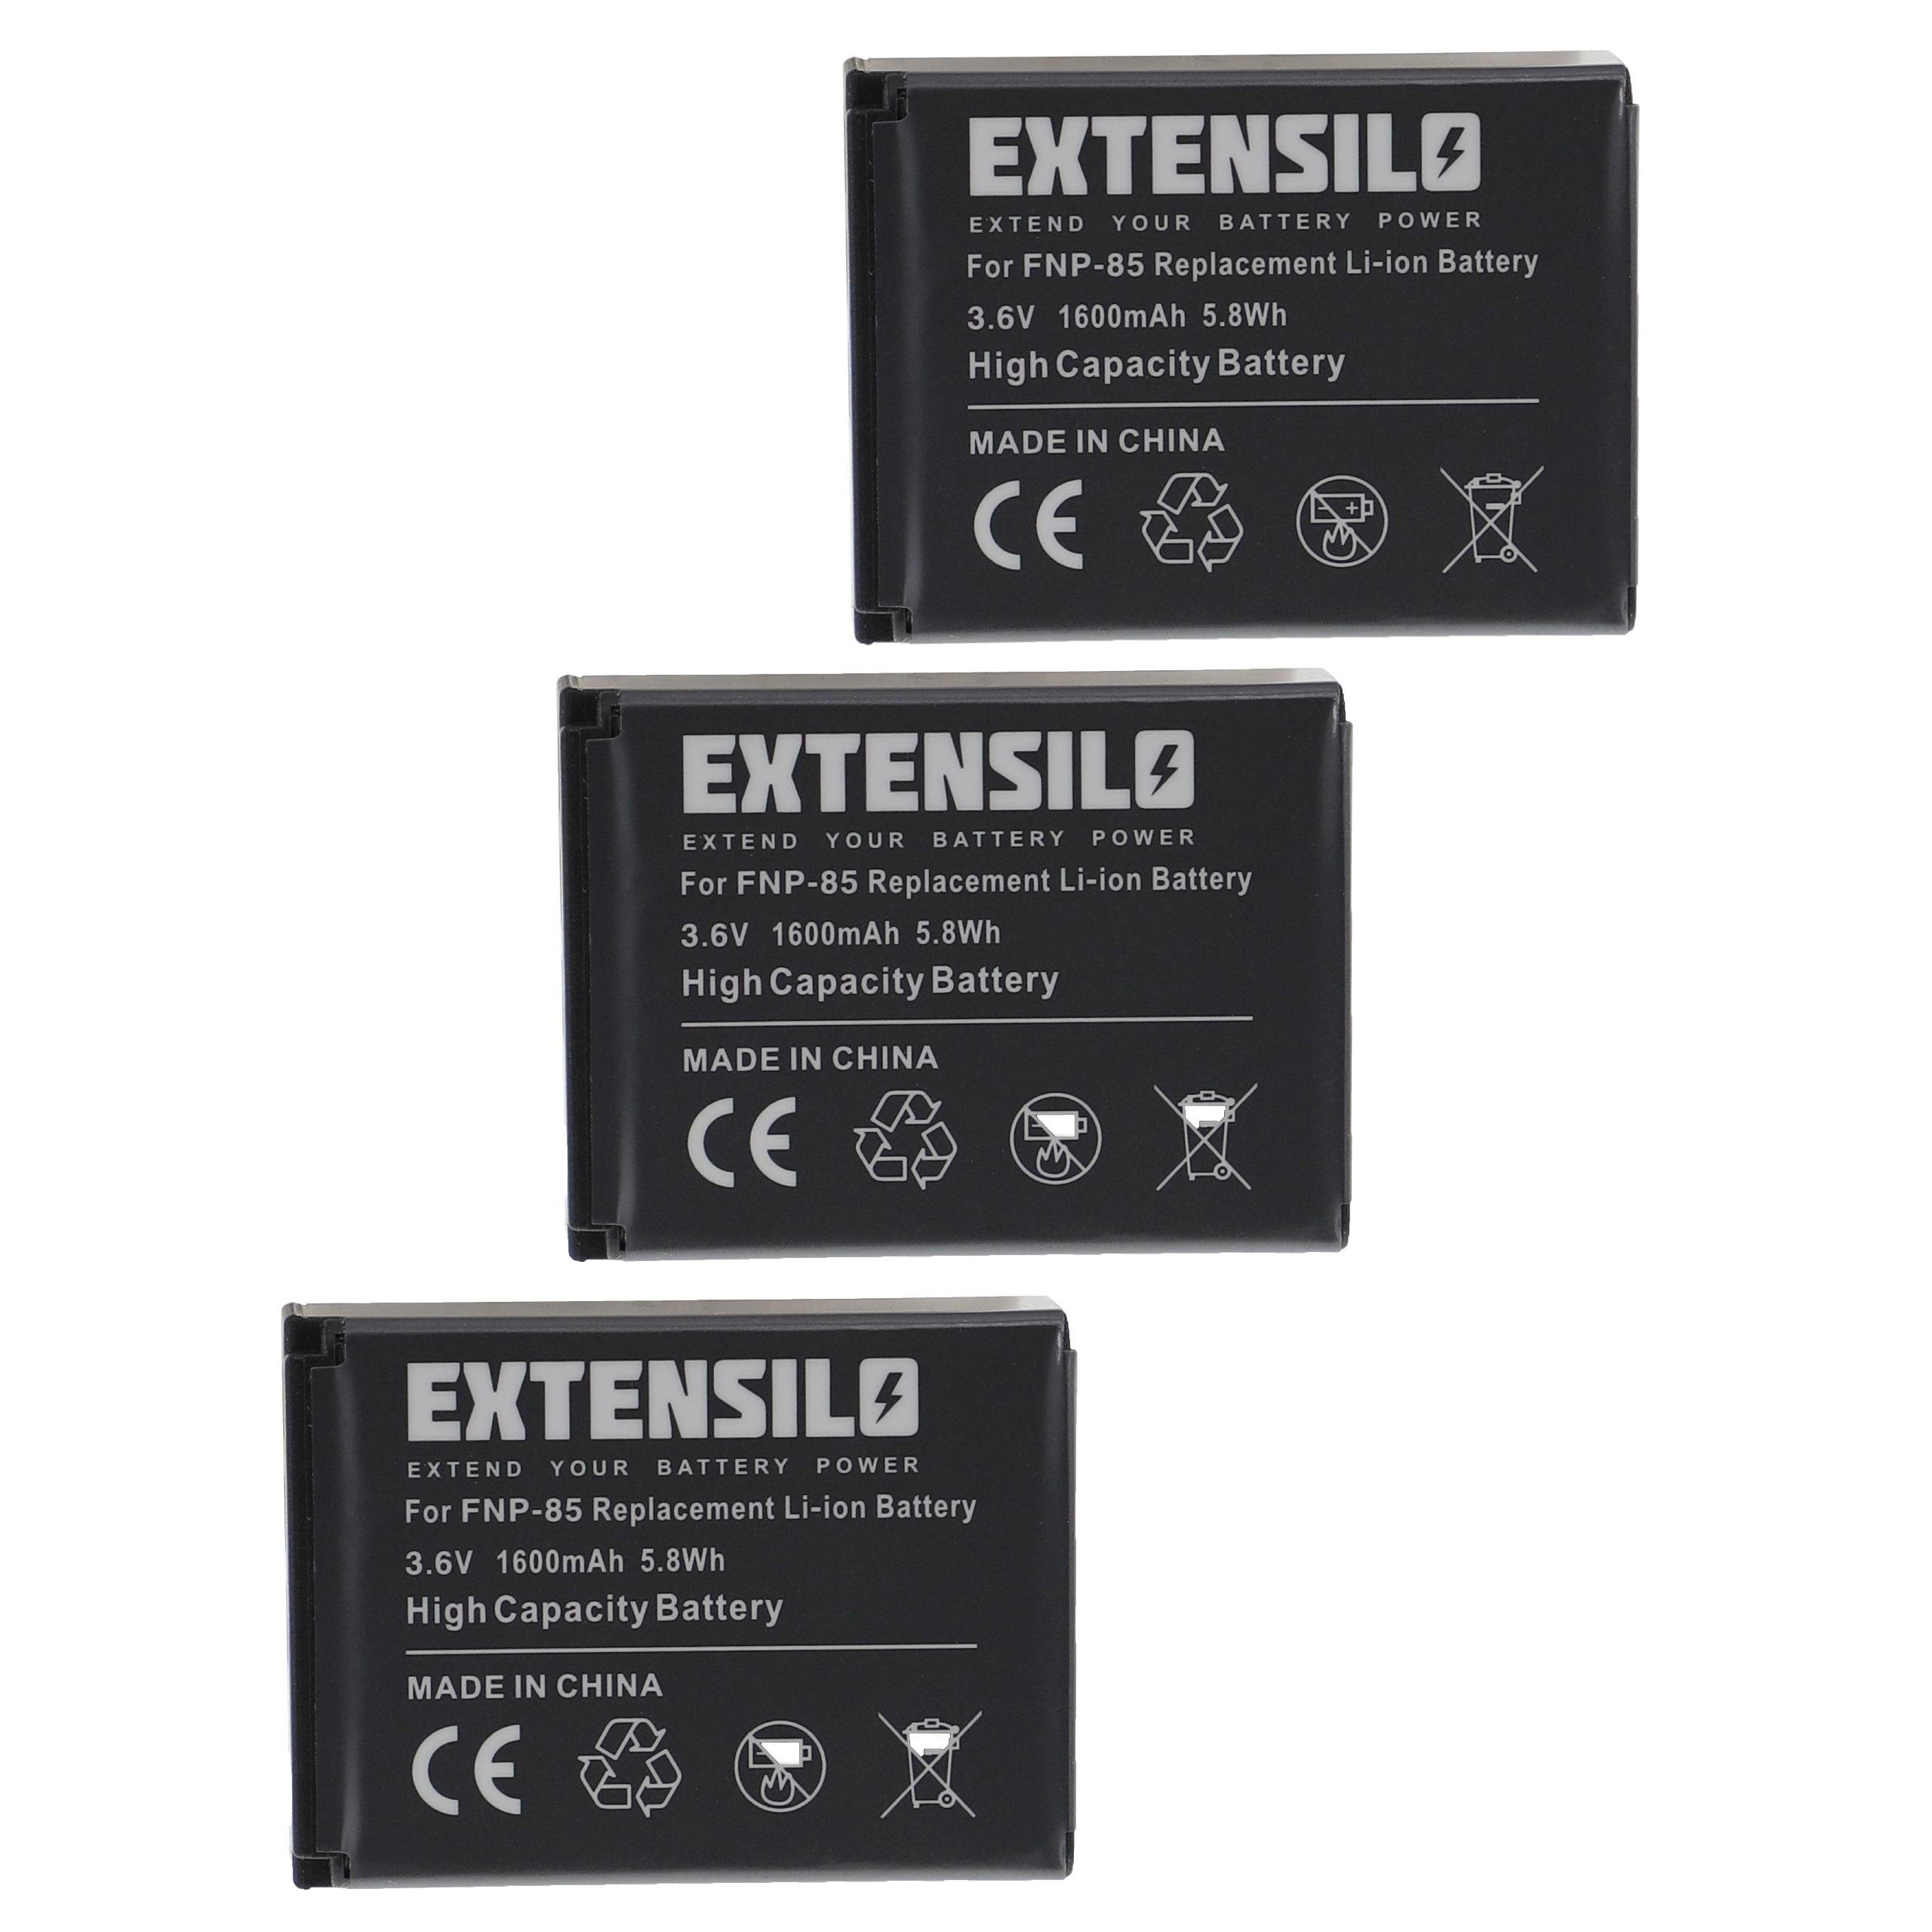 Outlet-Sonderverkauf Extensilo kompatibel mit Toshiba Camileo mAh 1600 Kamera-Akku Z100, Li-Ion HD, X416HD, X400, V) X200 X416 (3,6